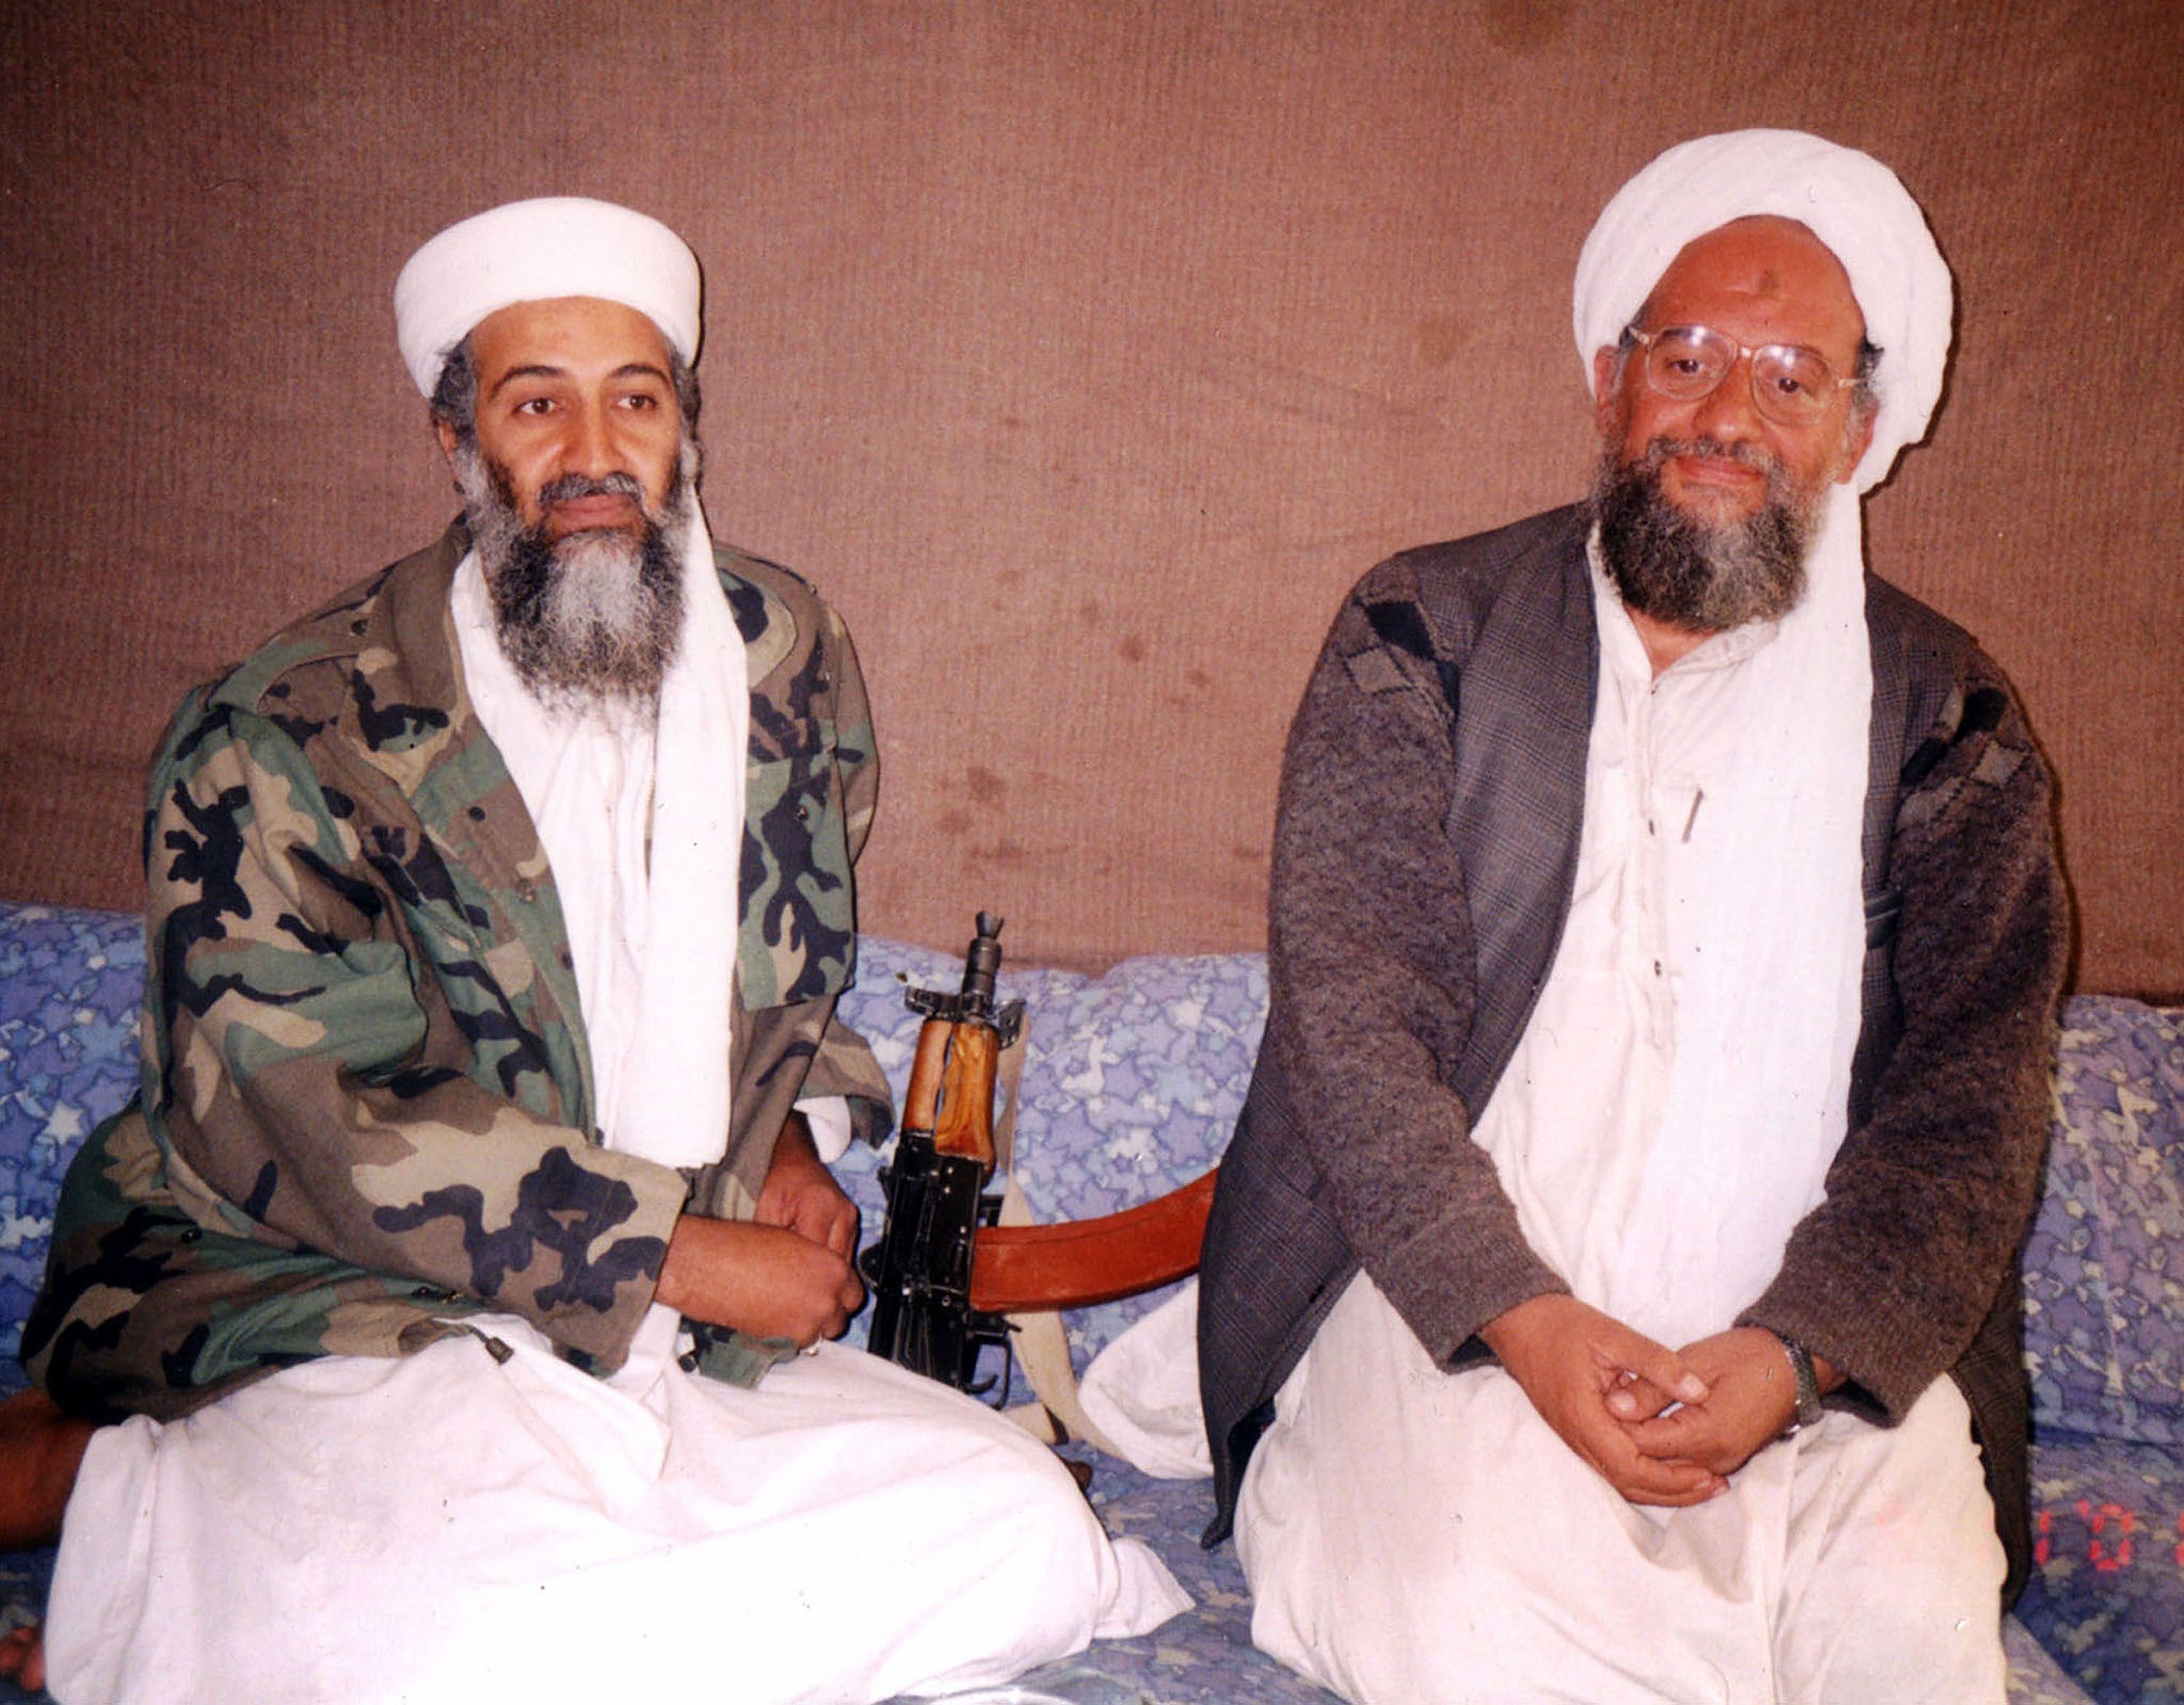 Al Qaeda sigue siendo una amenaza para Occidente dos décadas después del 11-S